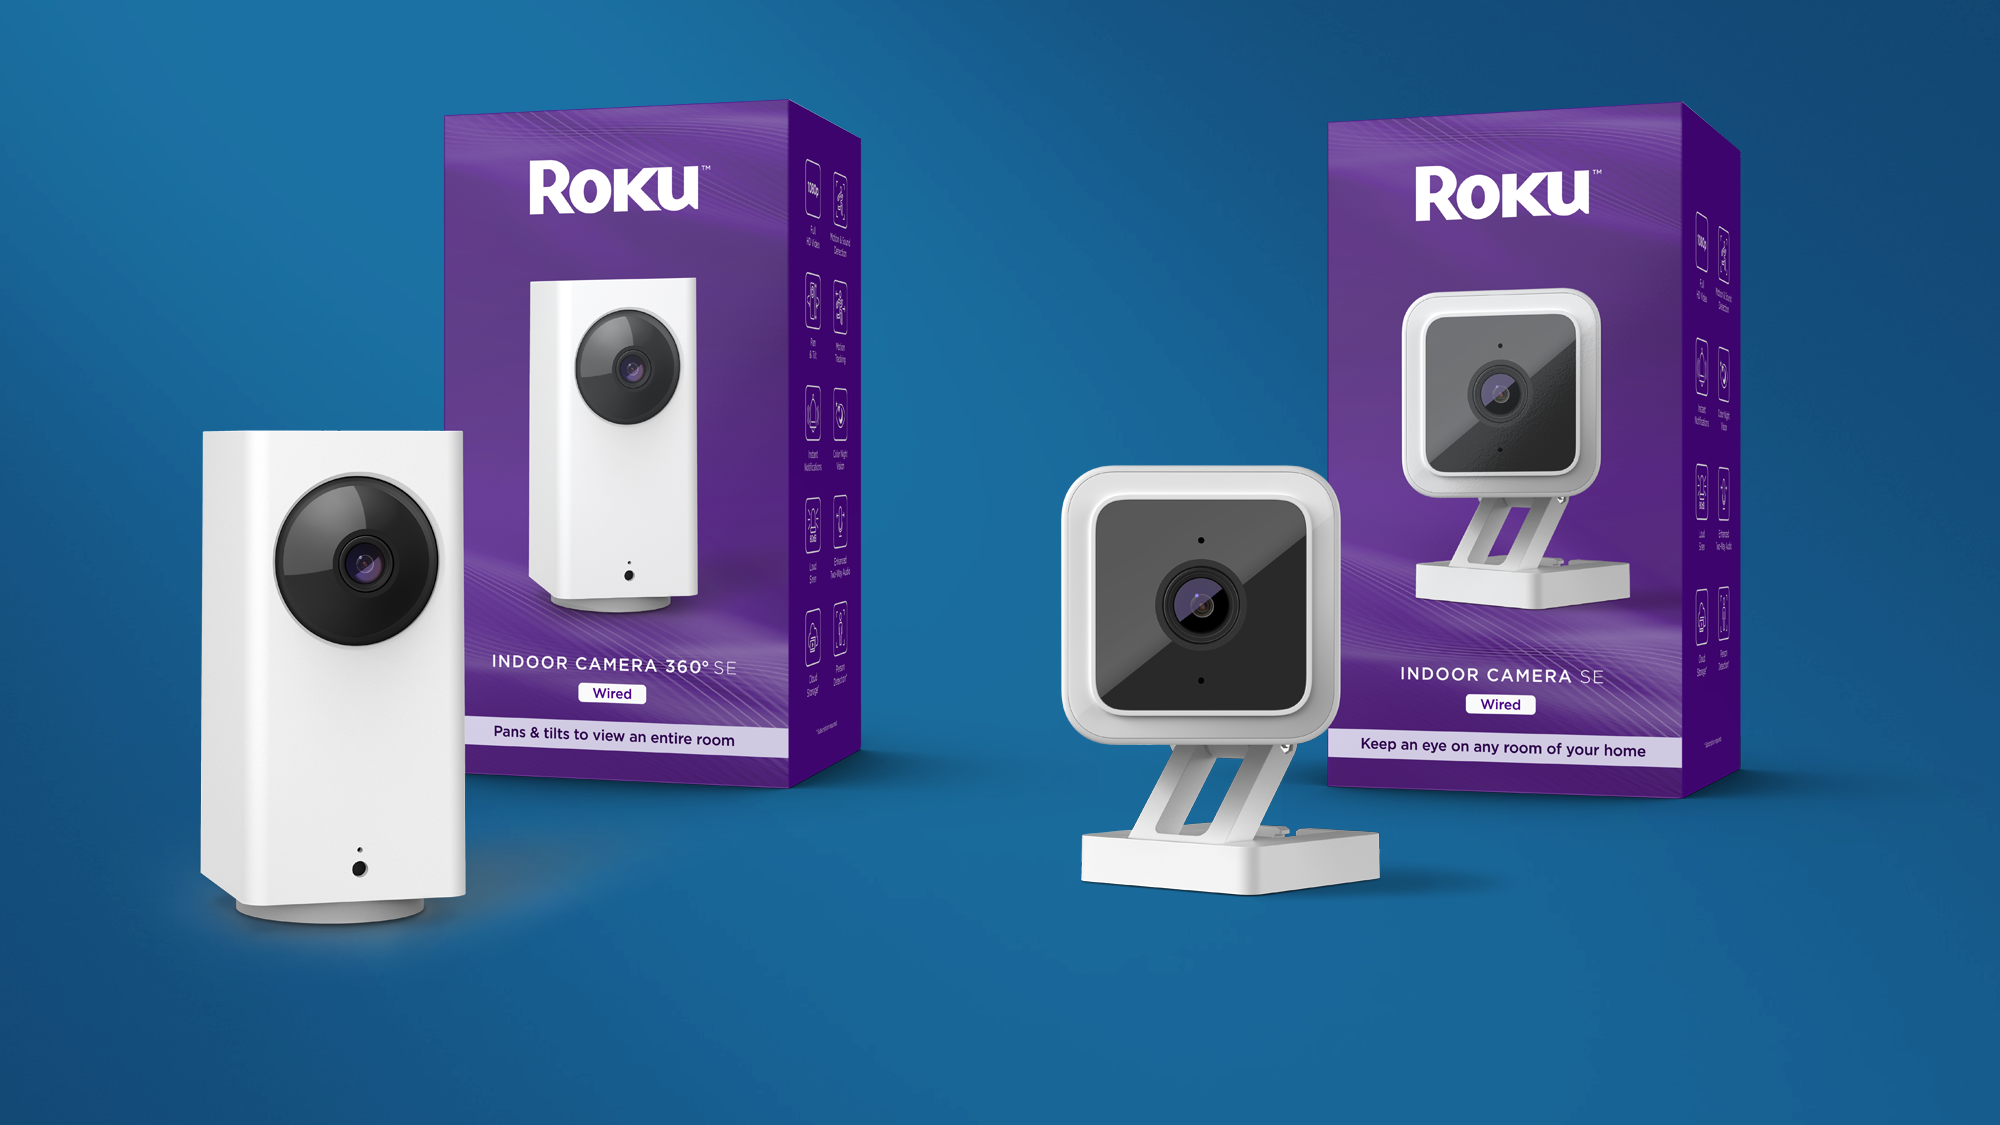 Roku indoor security cameras